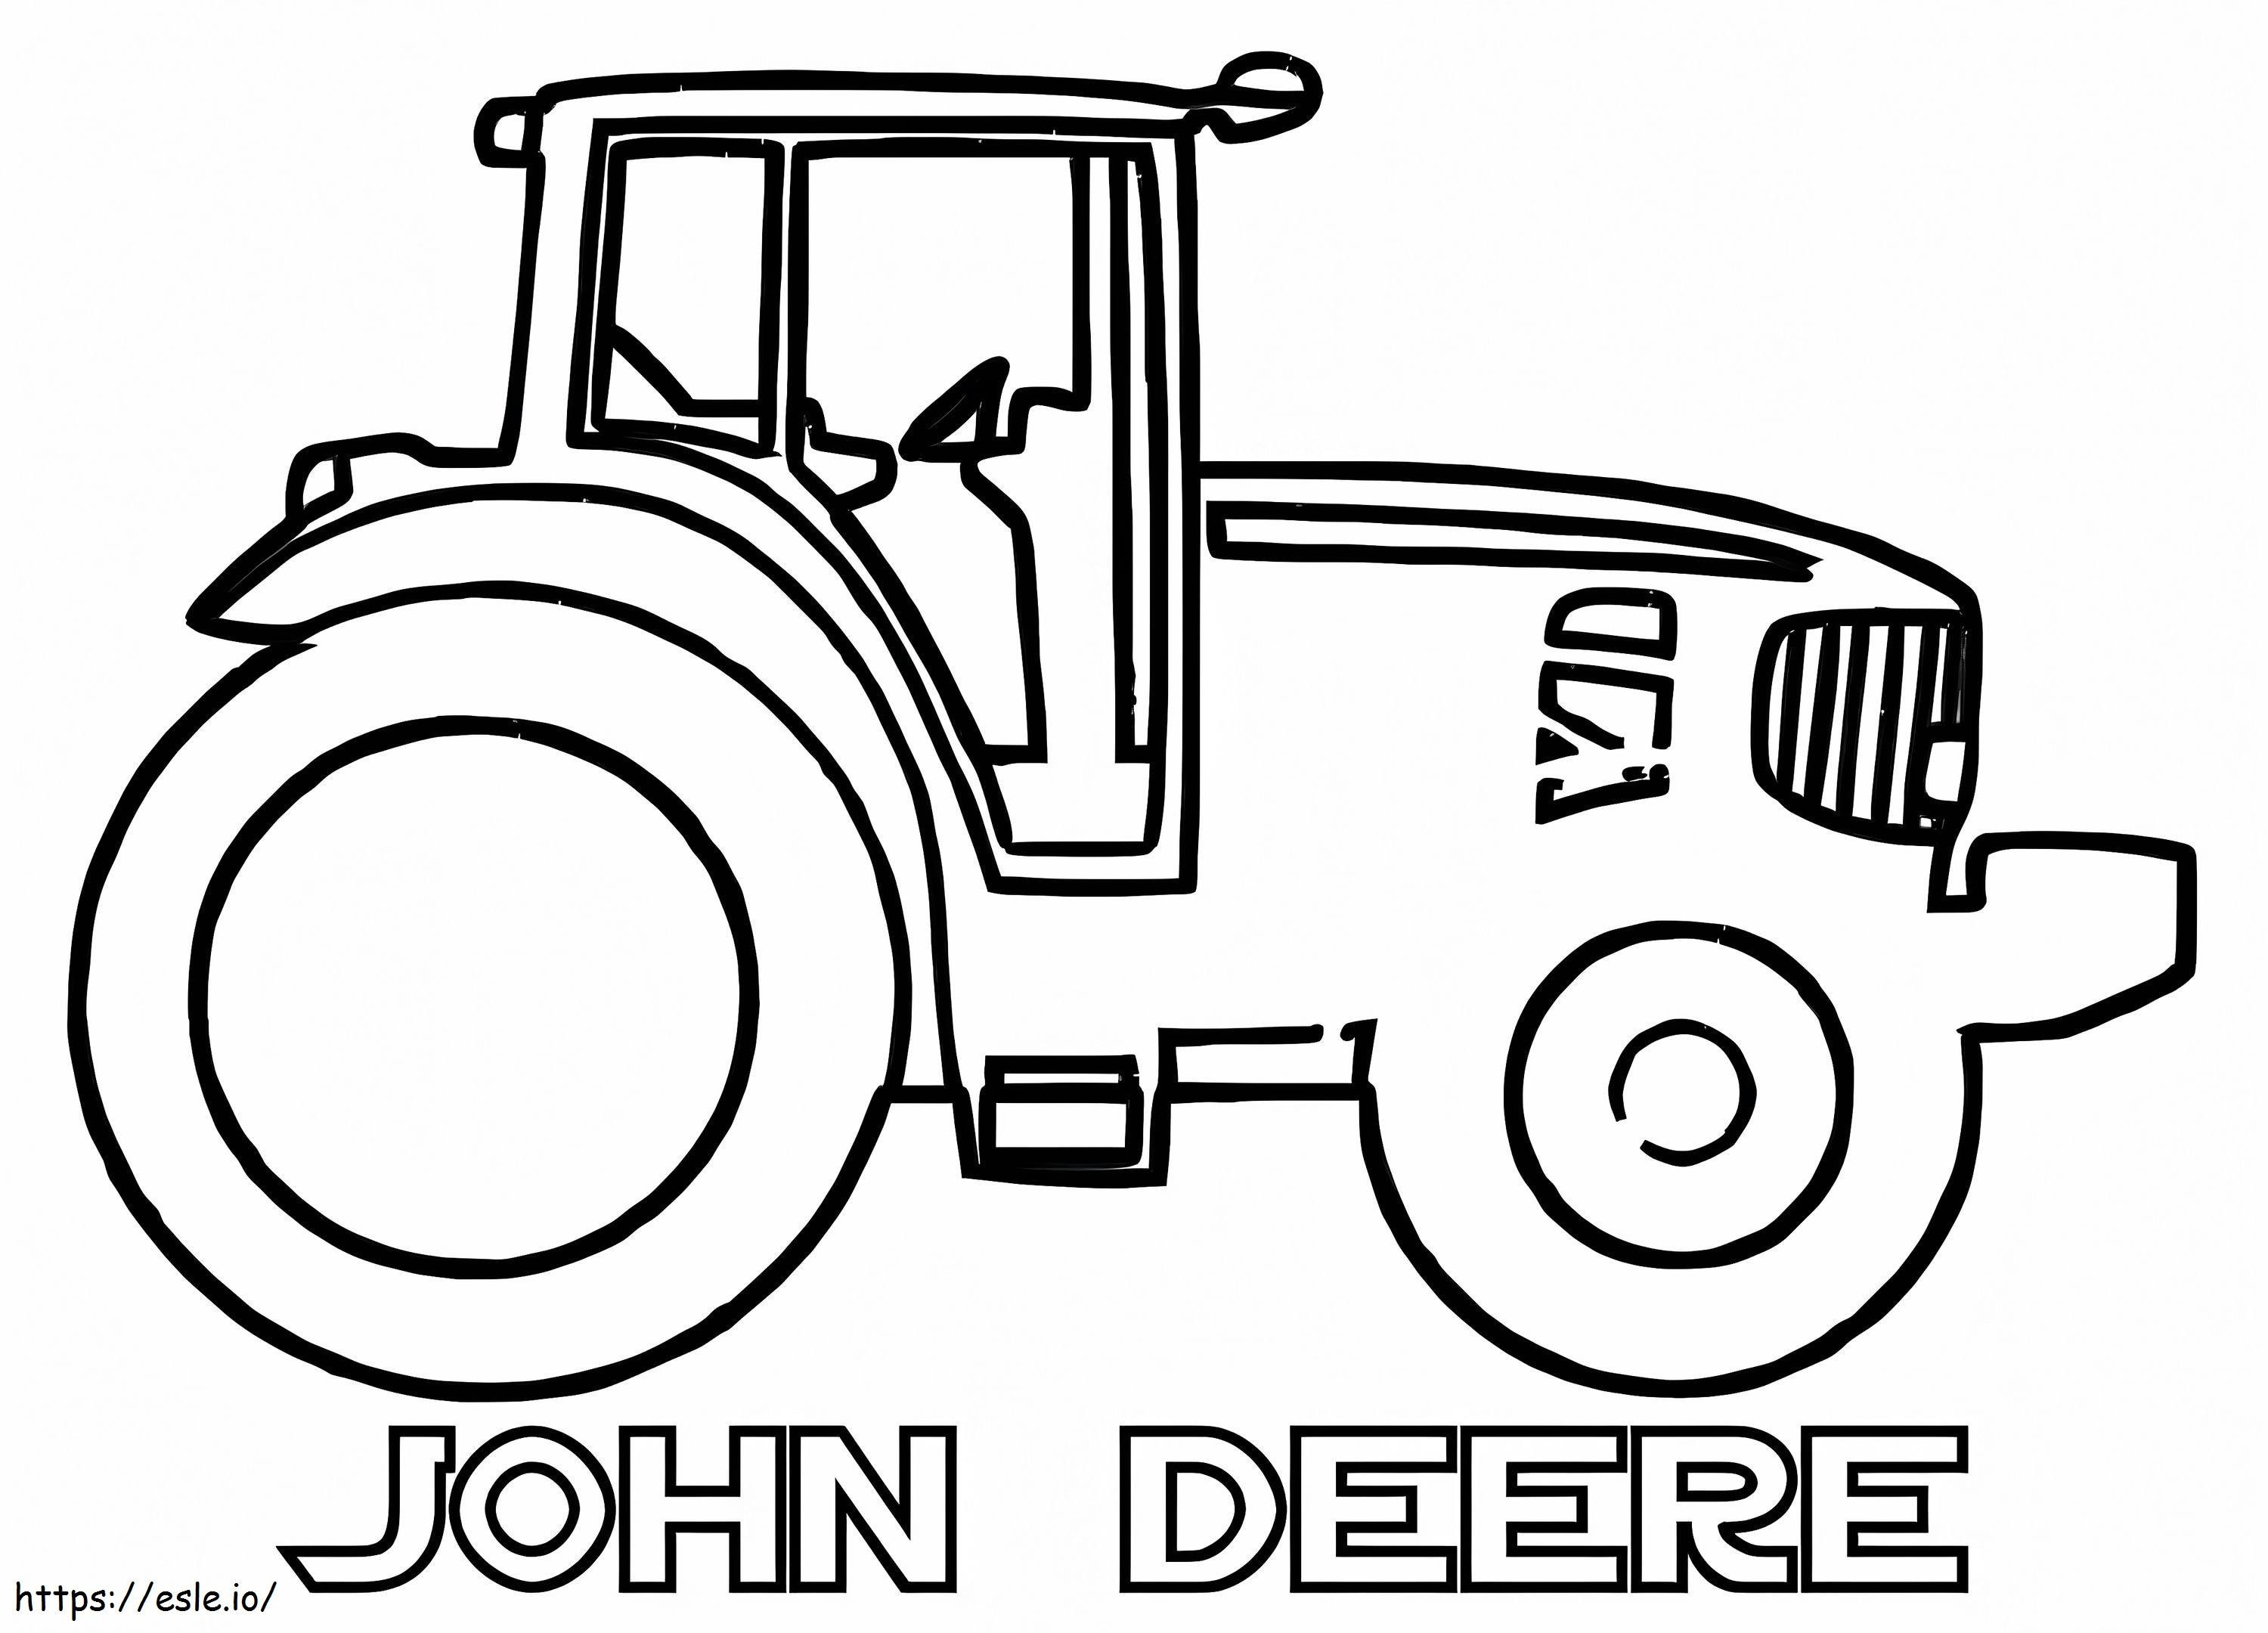 John Deere ausmalbilder